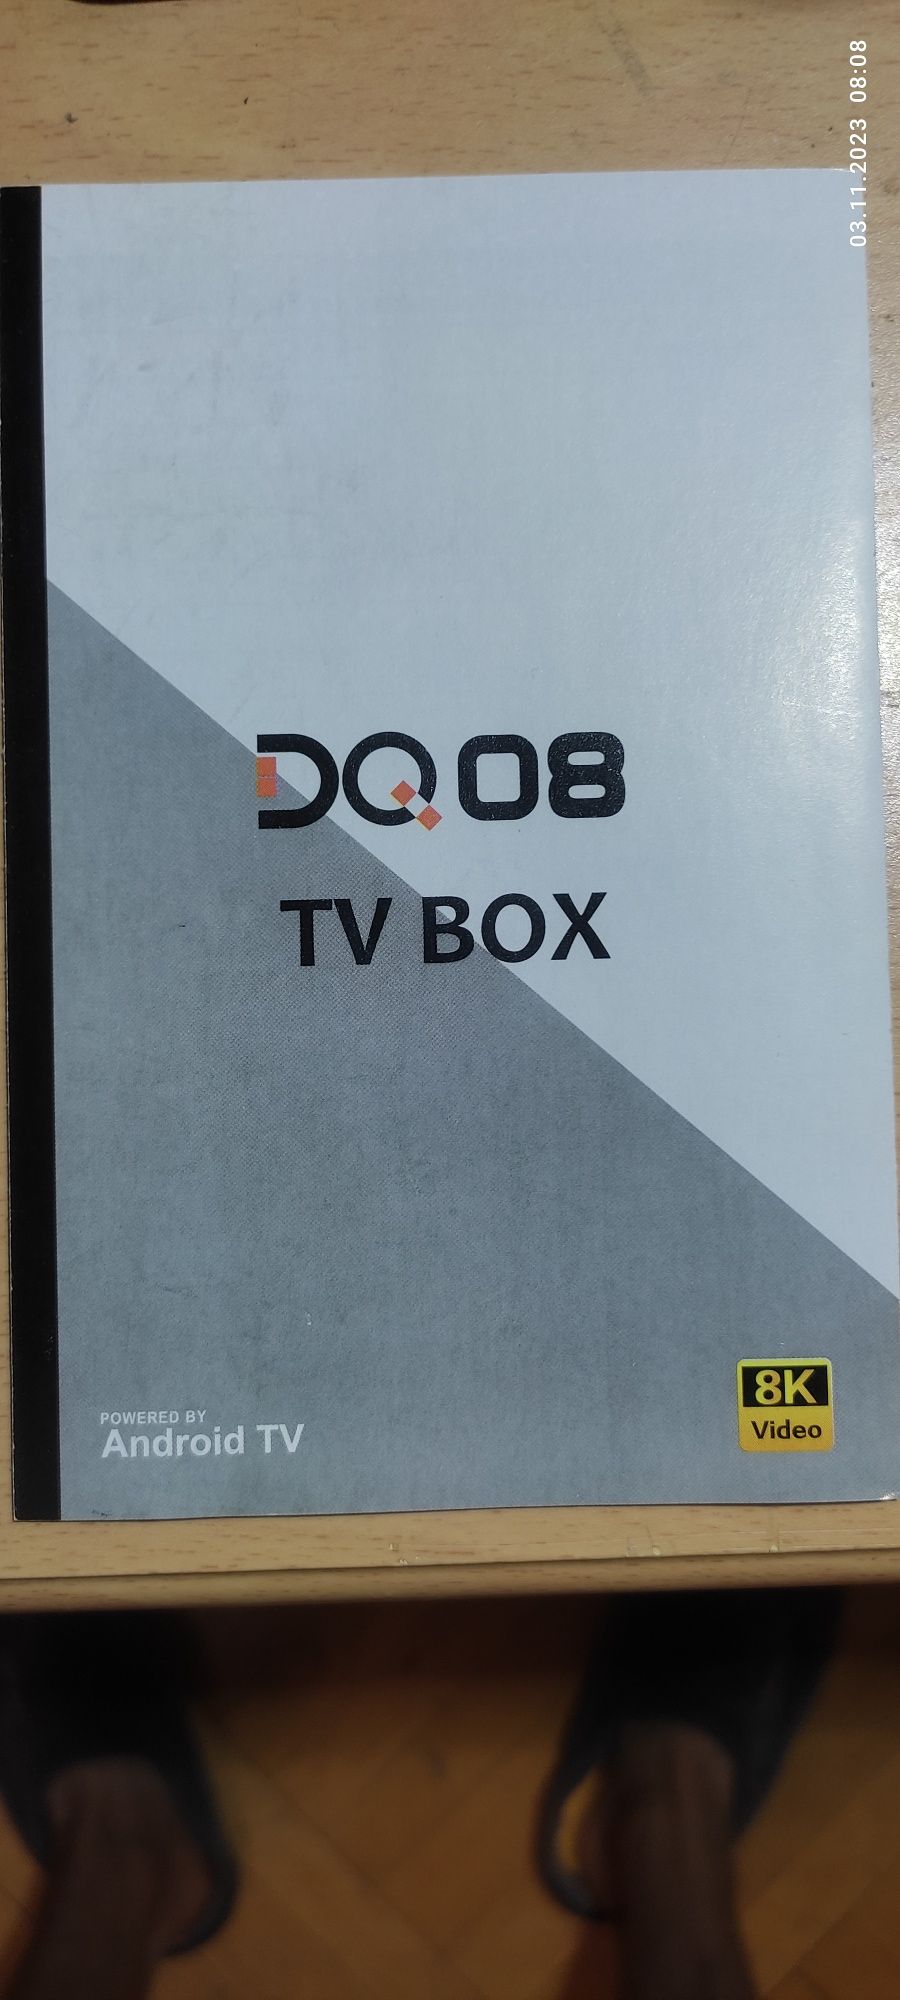 ТВ приставка DQ08